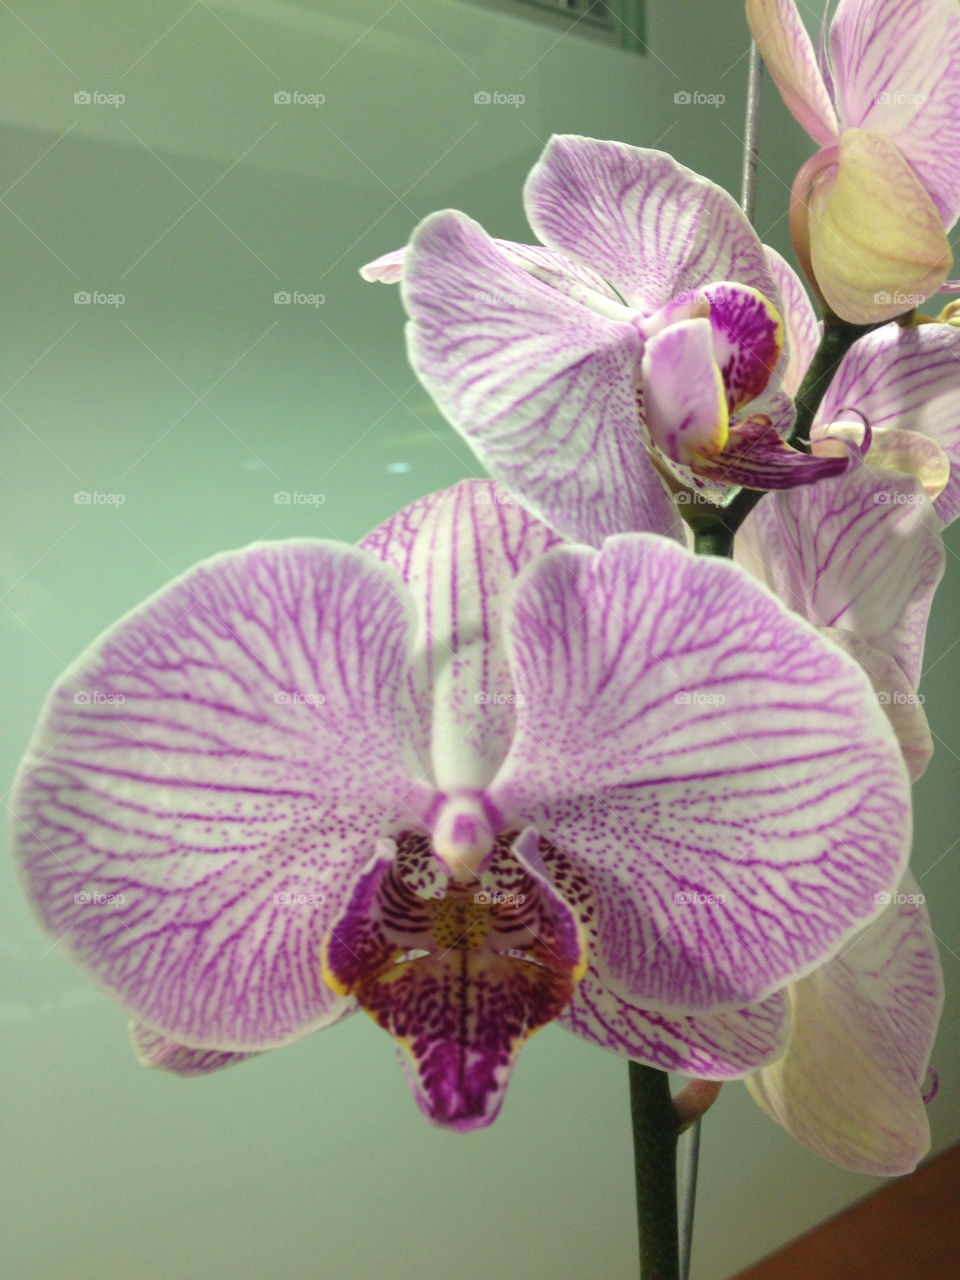 flor orquídea. medellín by gorregop